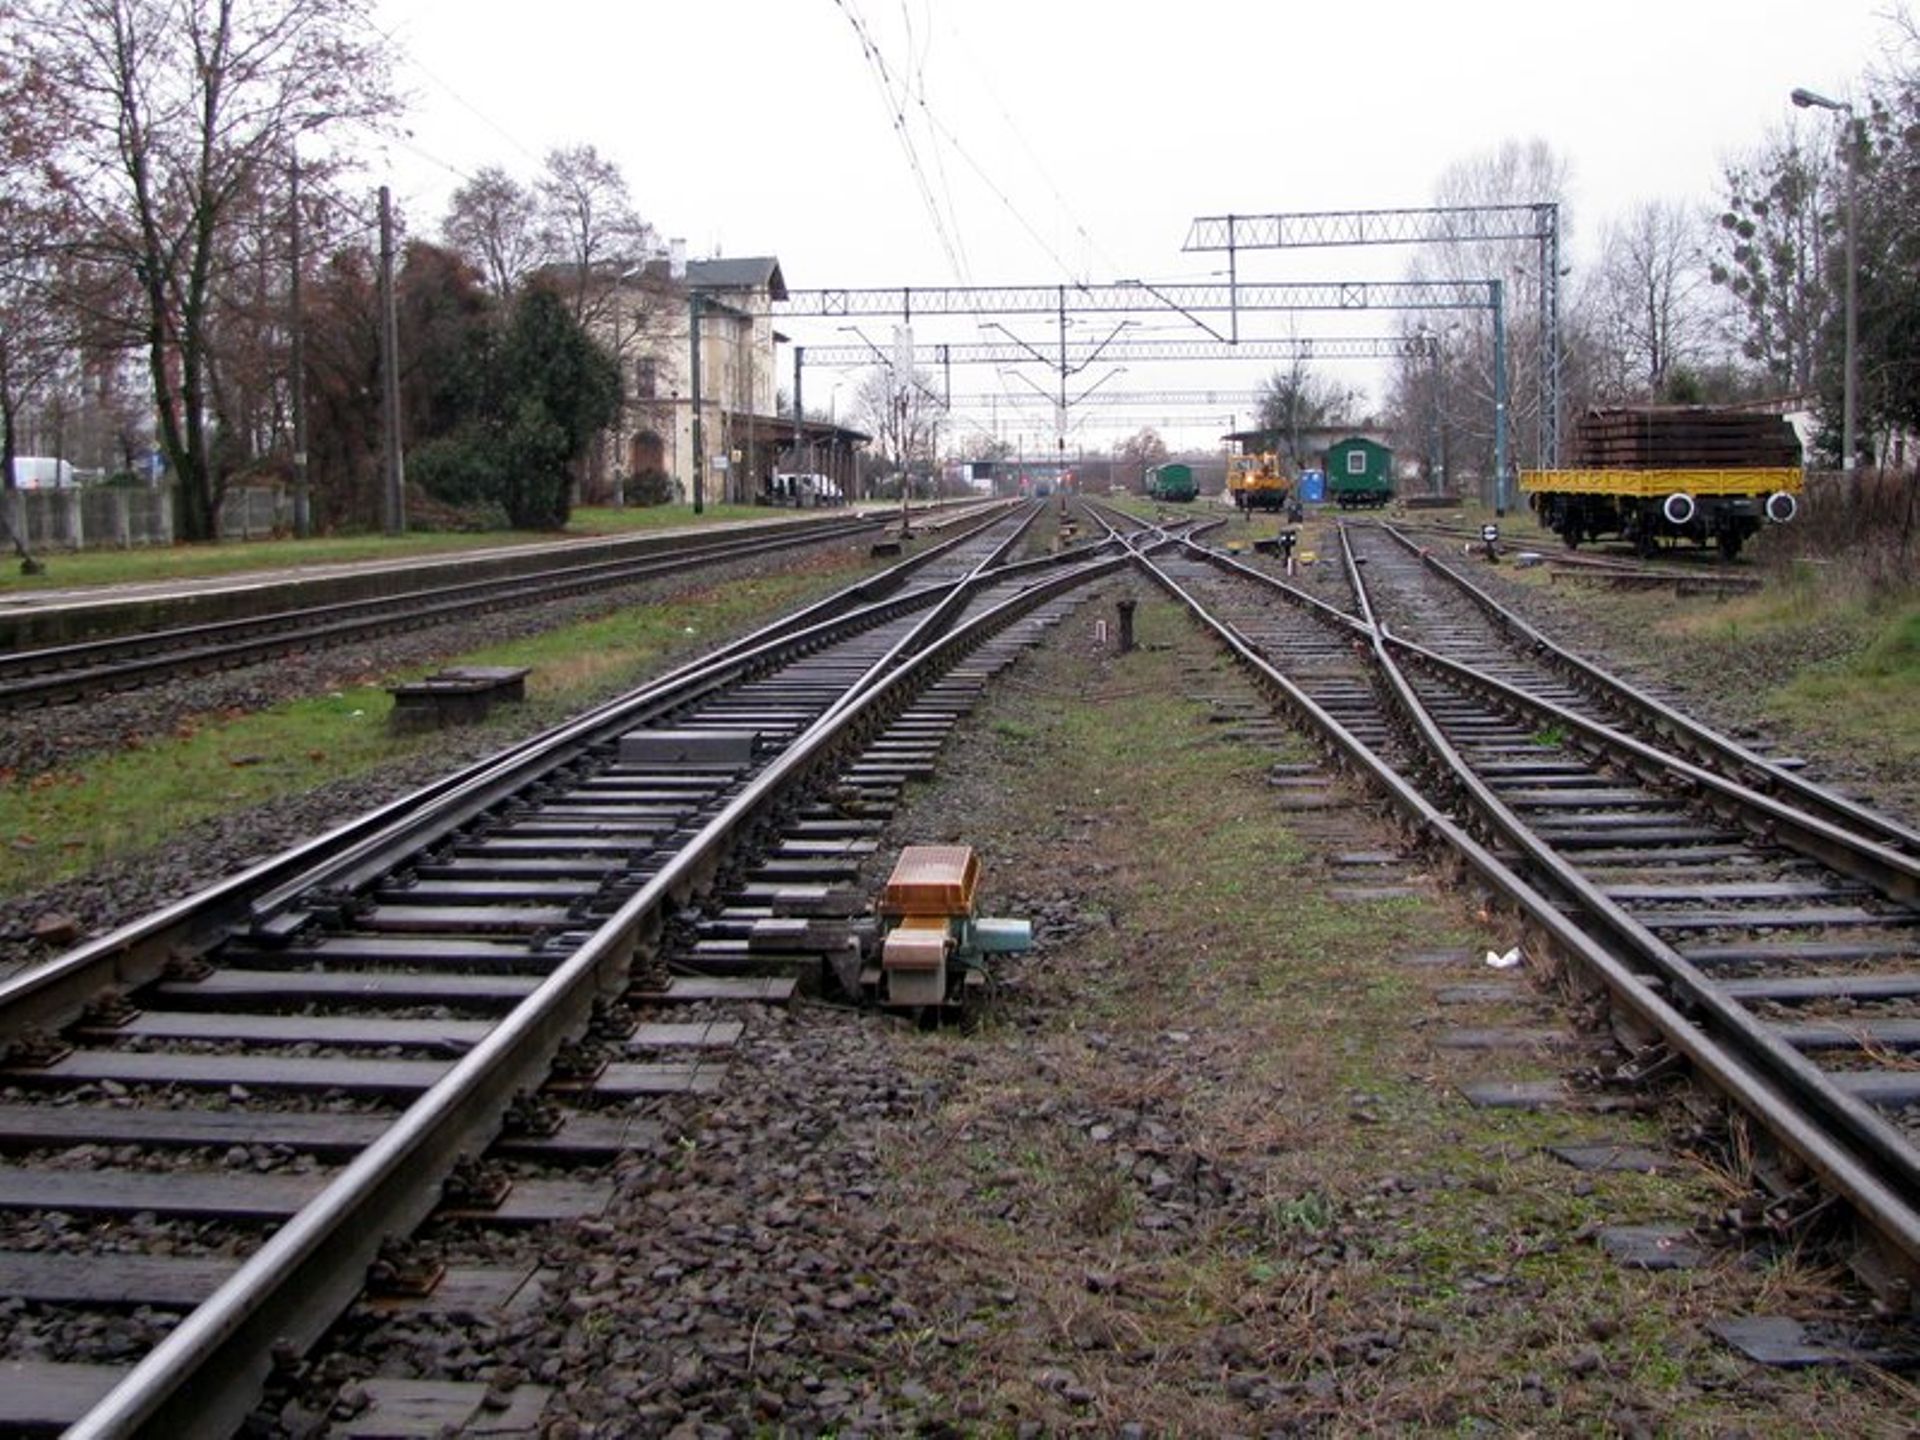 Wrocław: Mieszkańcy Zakrzowa oczekują budowy nowej stacji kolejowej. Składają petycję